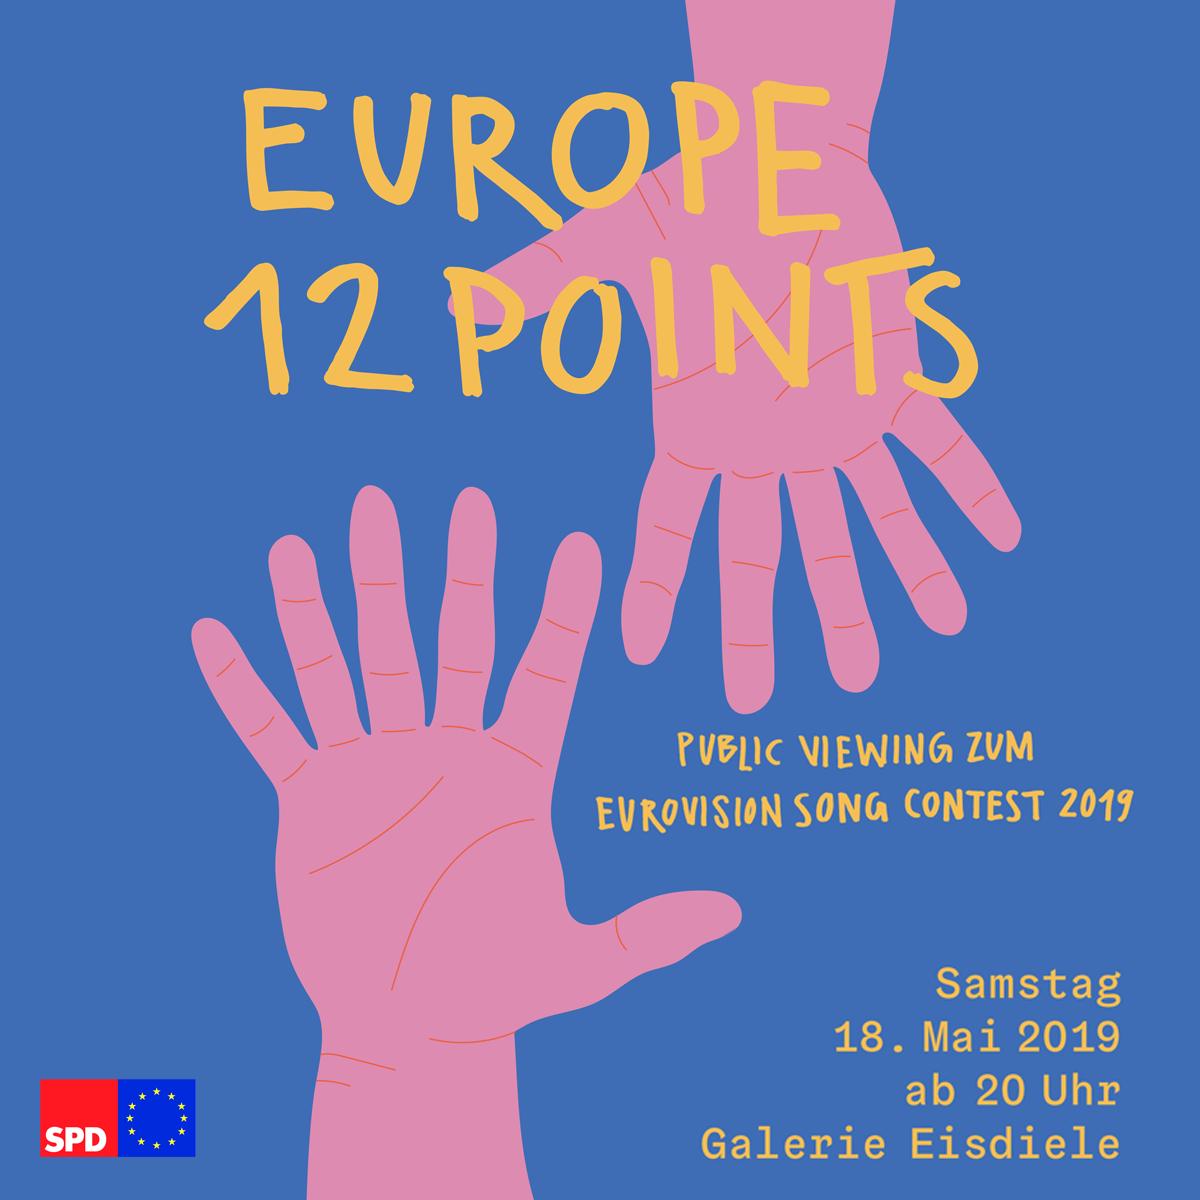 Wir feiern Vielfalt, Gemeinsamkeit und unsere Vision von #Europa. Wir feiern #Eurovision - und zwar am liebsten mit Euch! Kommt und feiert mit uns 🎈 📌Galerie Eisdiele (Rothenburger Str. 185 in Nürnberg) ⏰Samstag, 18. Mai ab 20 Uhr #spd #ESC19